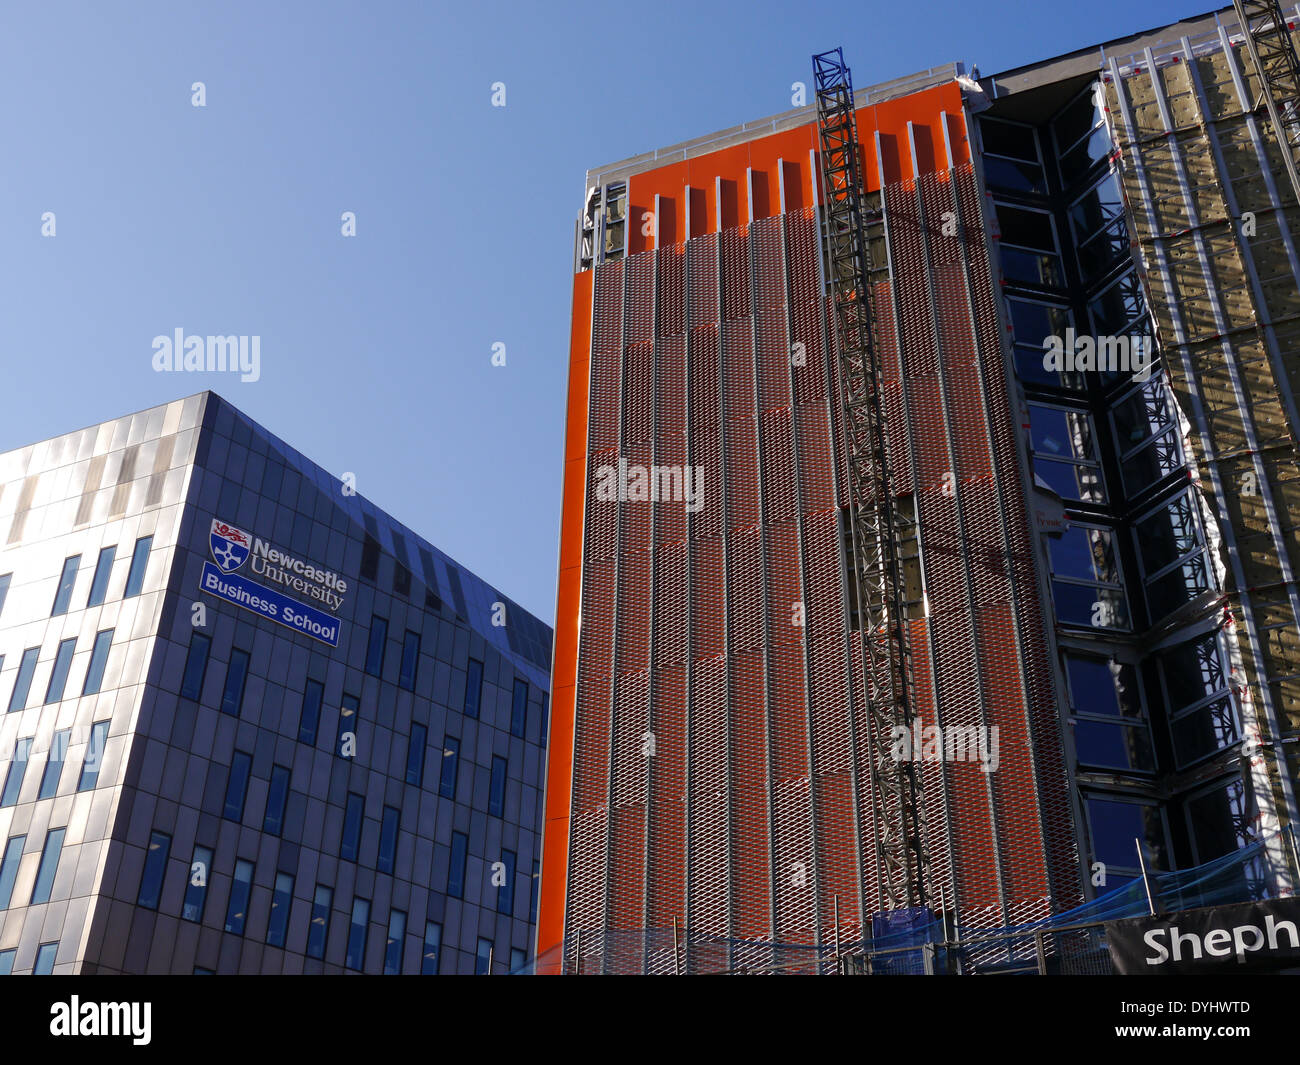 Architecture moderne - Construction d'un immeuble à bureaux, Science City, Gallowgate, Newcastle upon Tyne, England, UK Banque D'Images